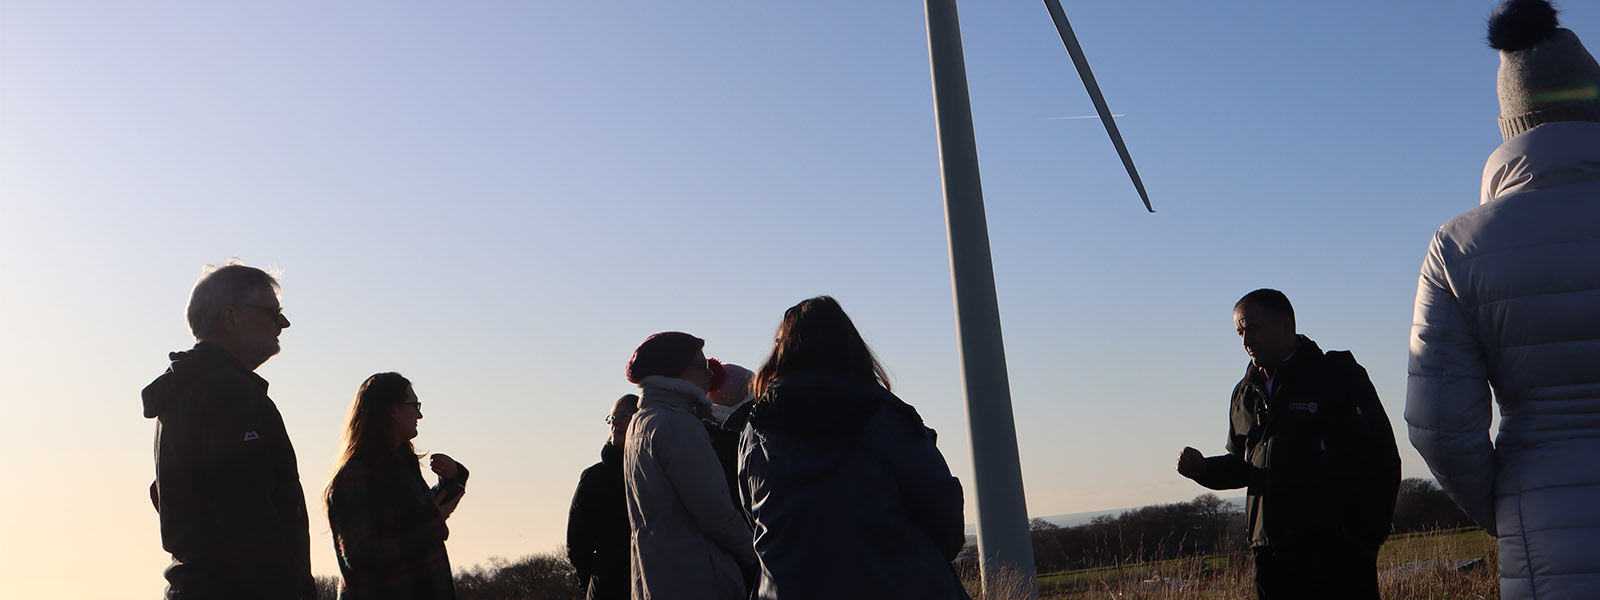 ϲʿ's wind turbine with people attending a talk on sustainability.